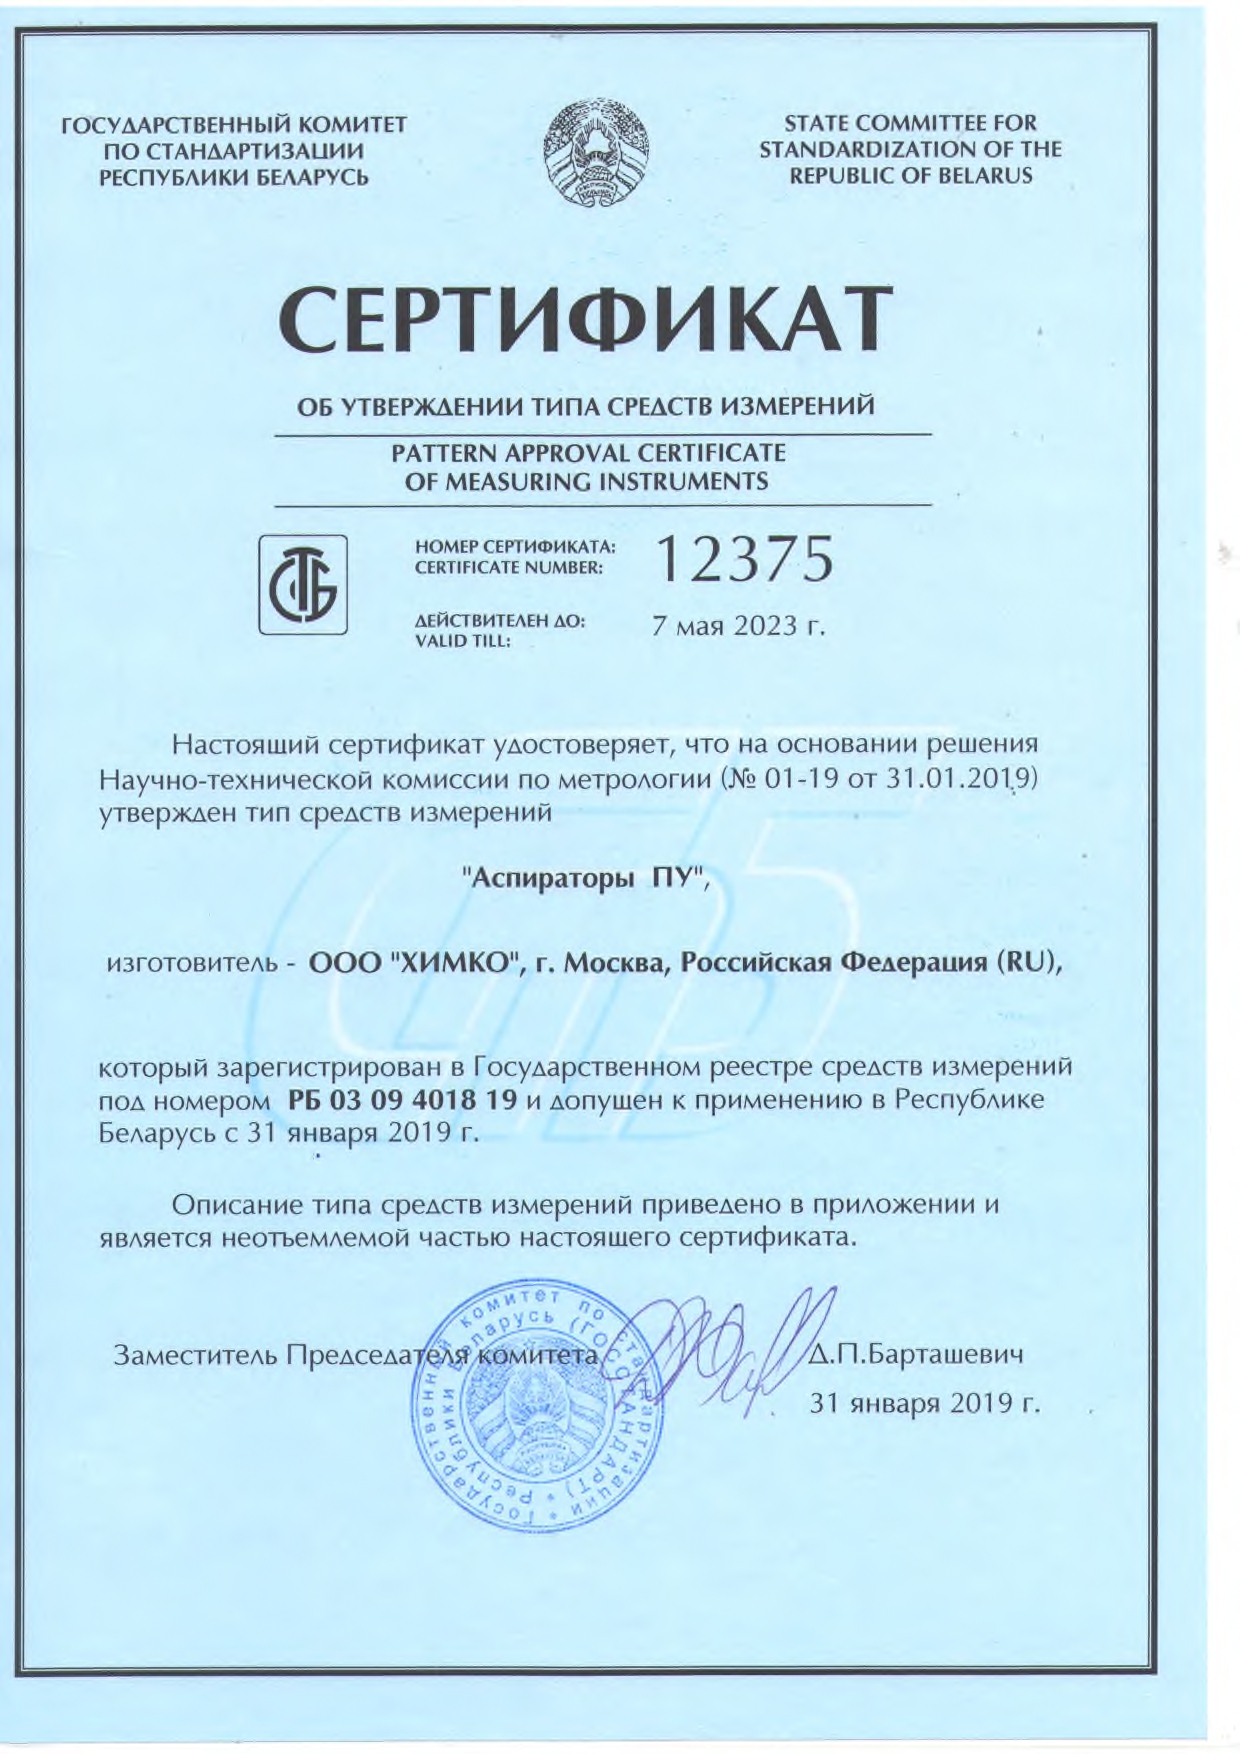 Сертификат об утверждении типа средств измерений 